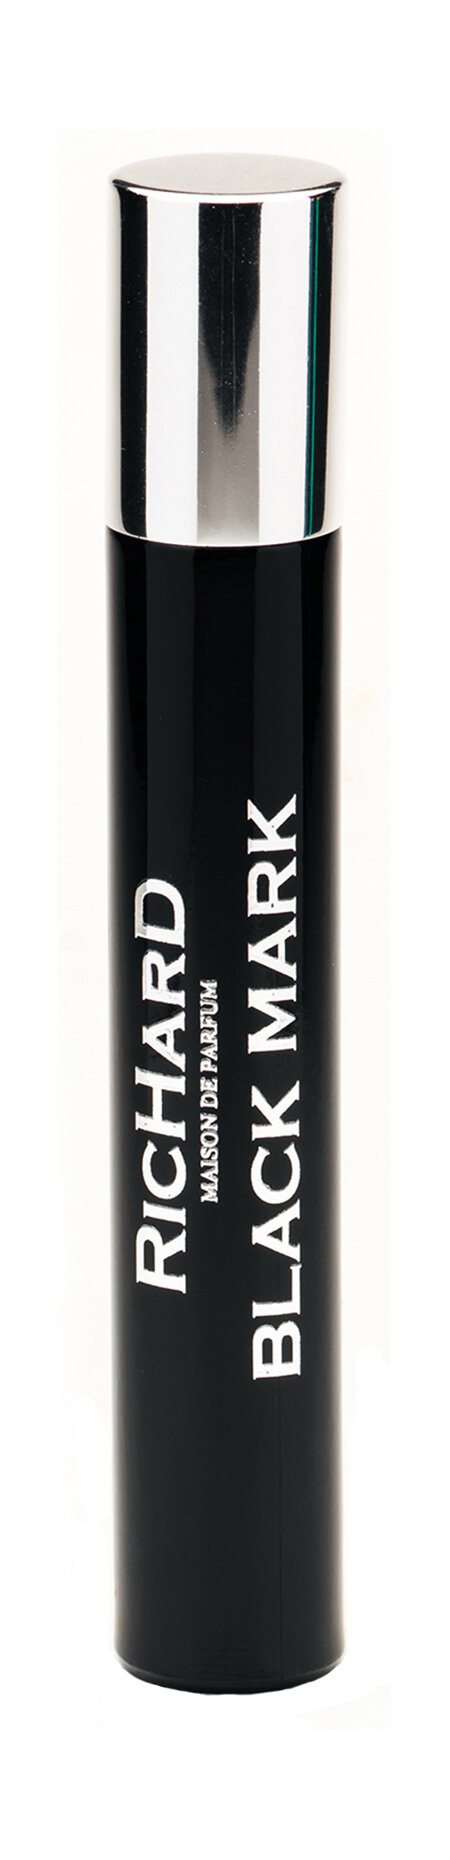 RICHARD MAISON DE PARFUM Black Mark Парфюмерная вода унисекс, 10 мл